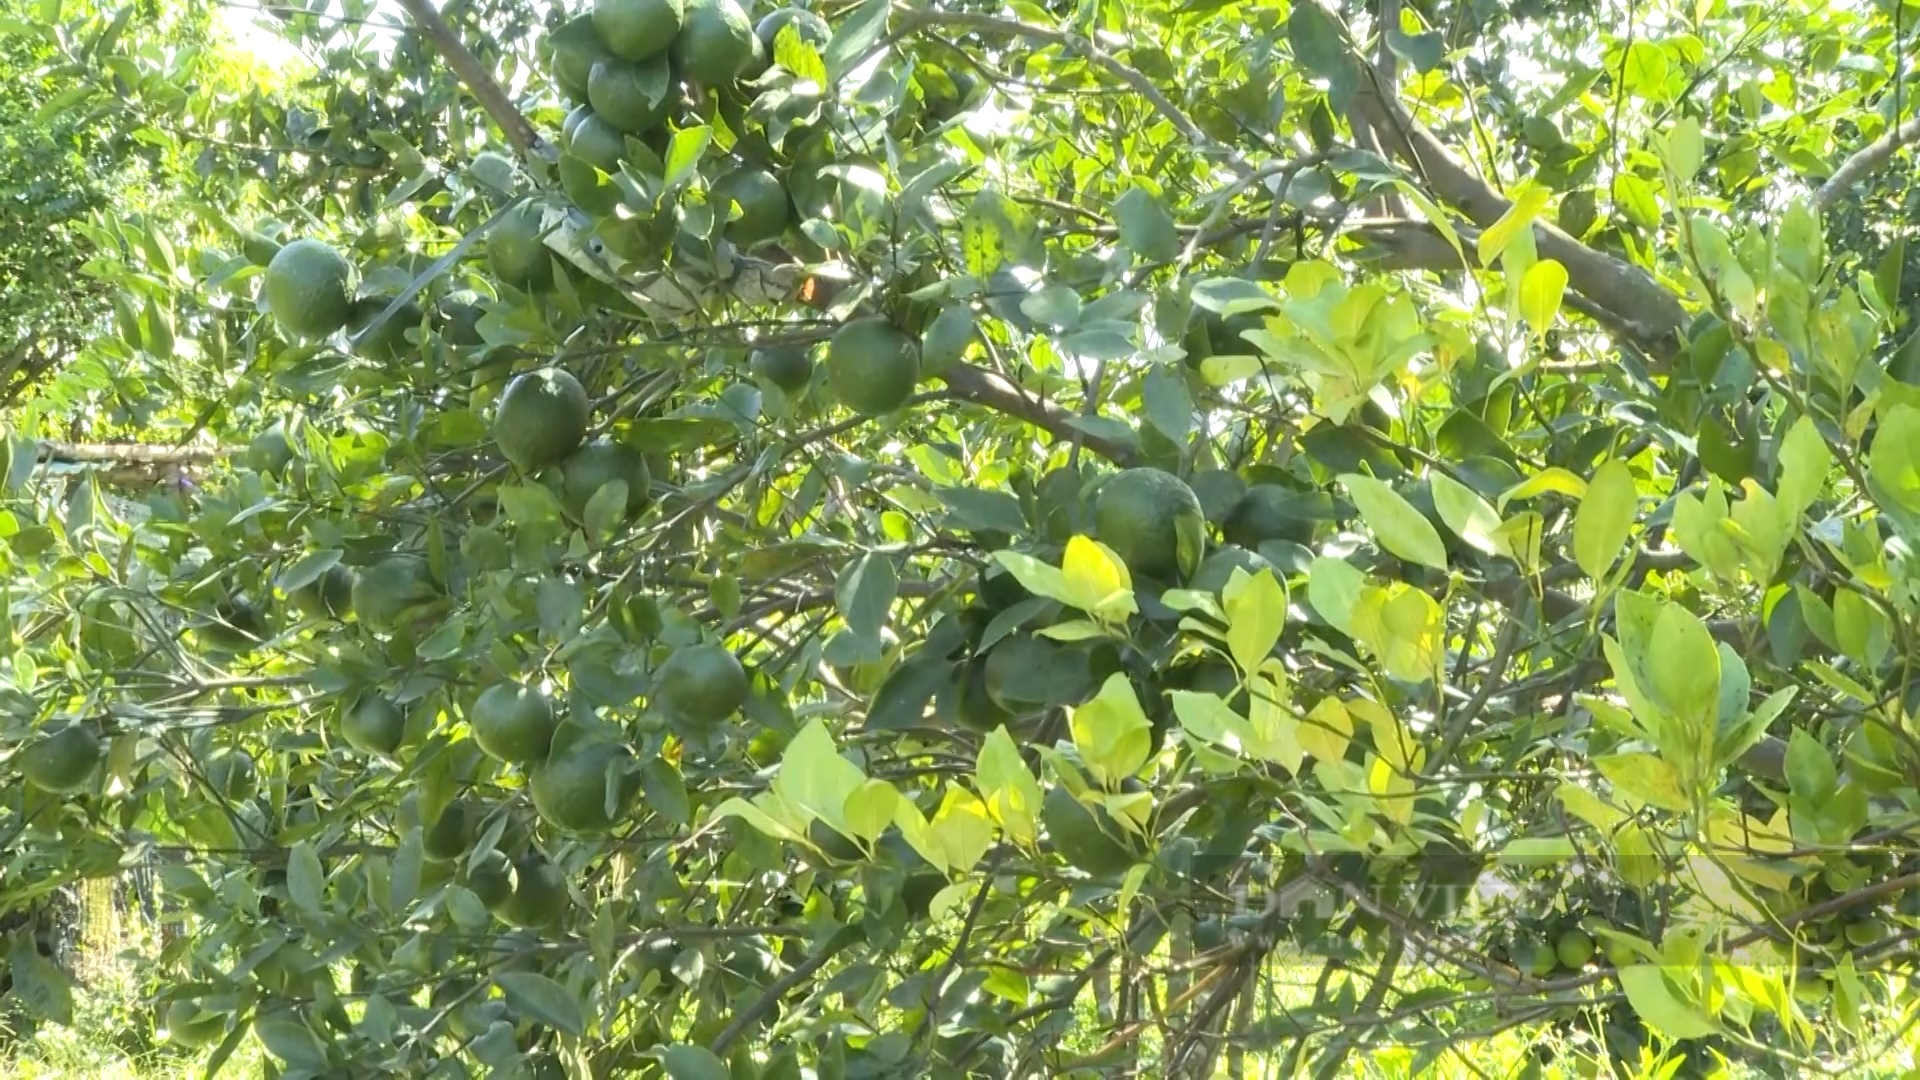 Quảng Nam: Nông dân miền núi trồng cây ăn quả, cây dược liệu, mỗi năm thu lãi hàng trăm triệu đồng - Ảnh 2.